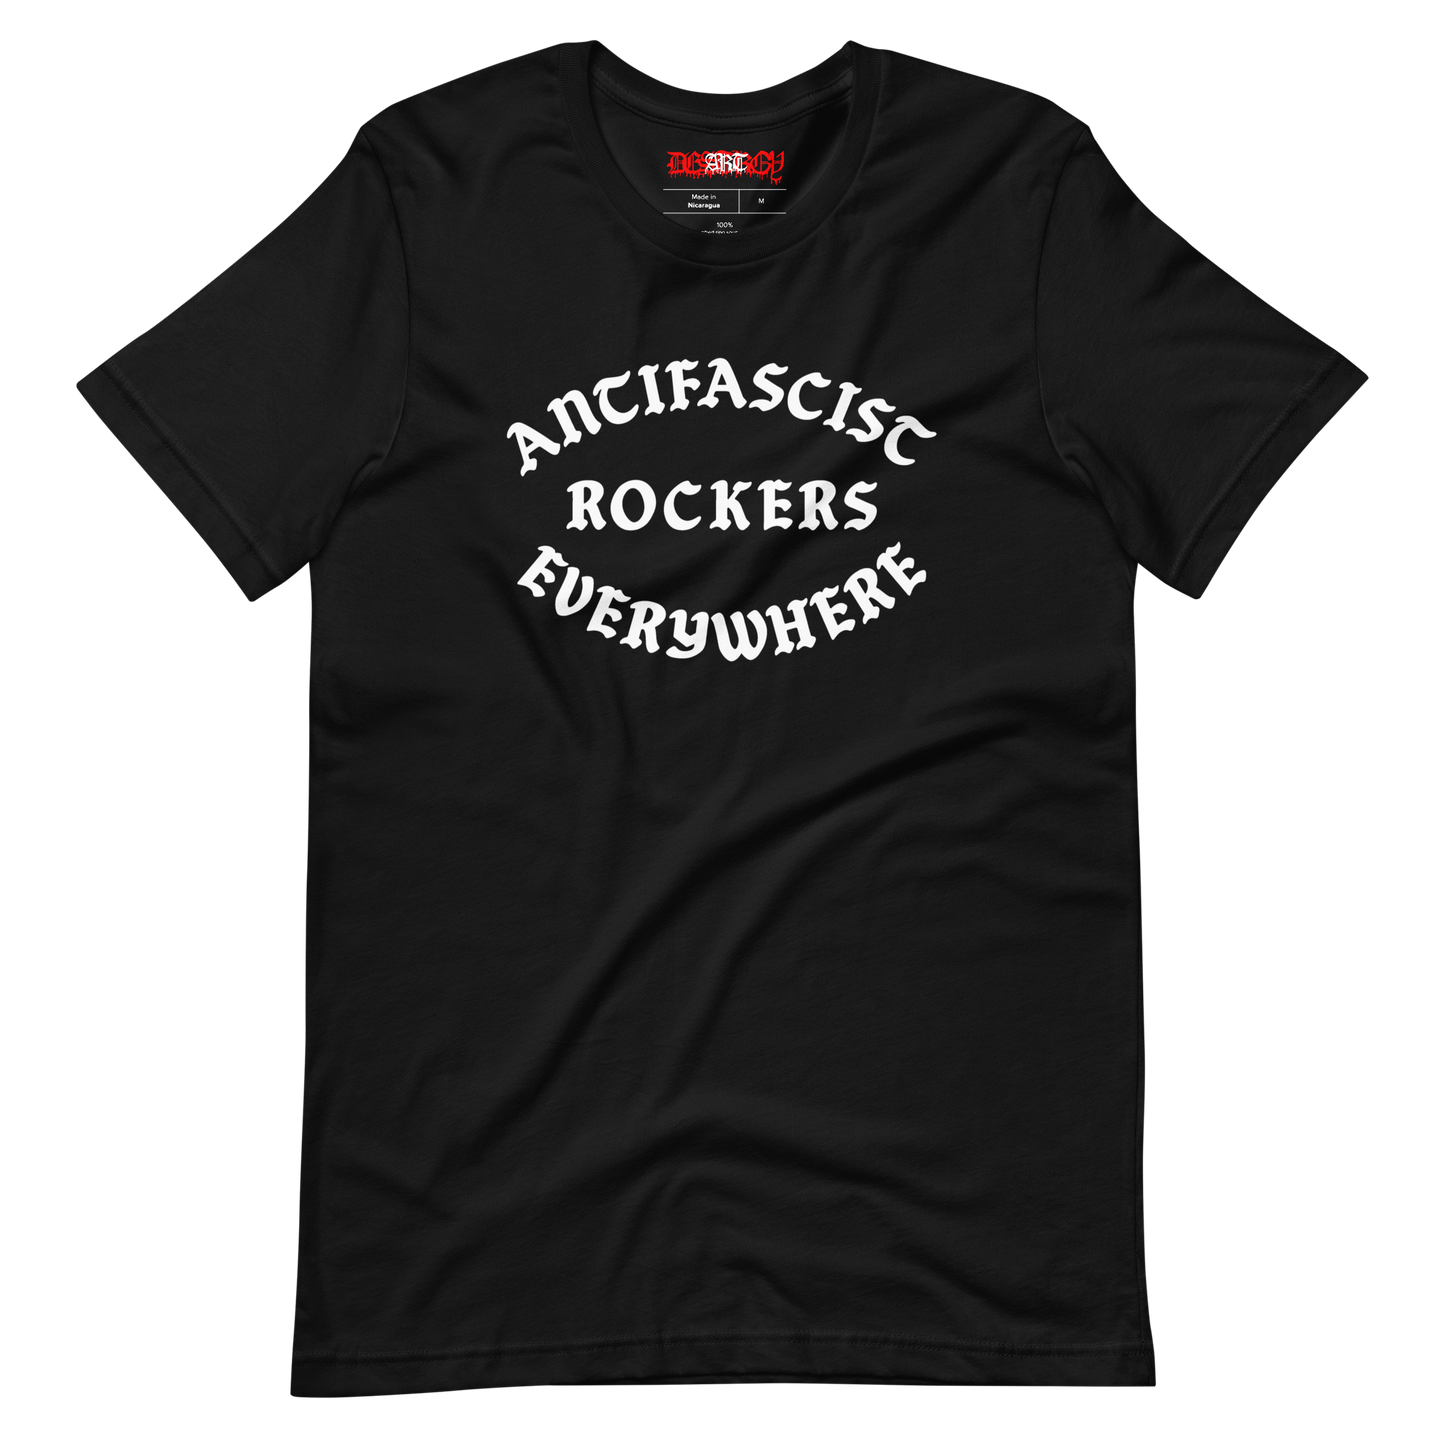 Stealworks "Antifascist Rockers Everywhere" T-shirt